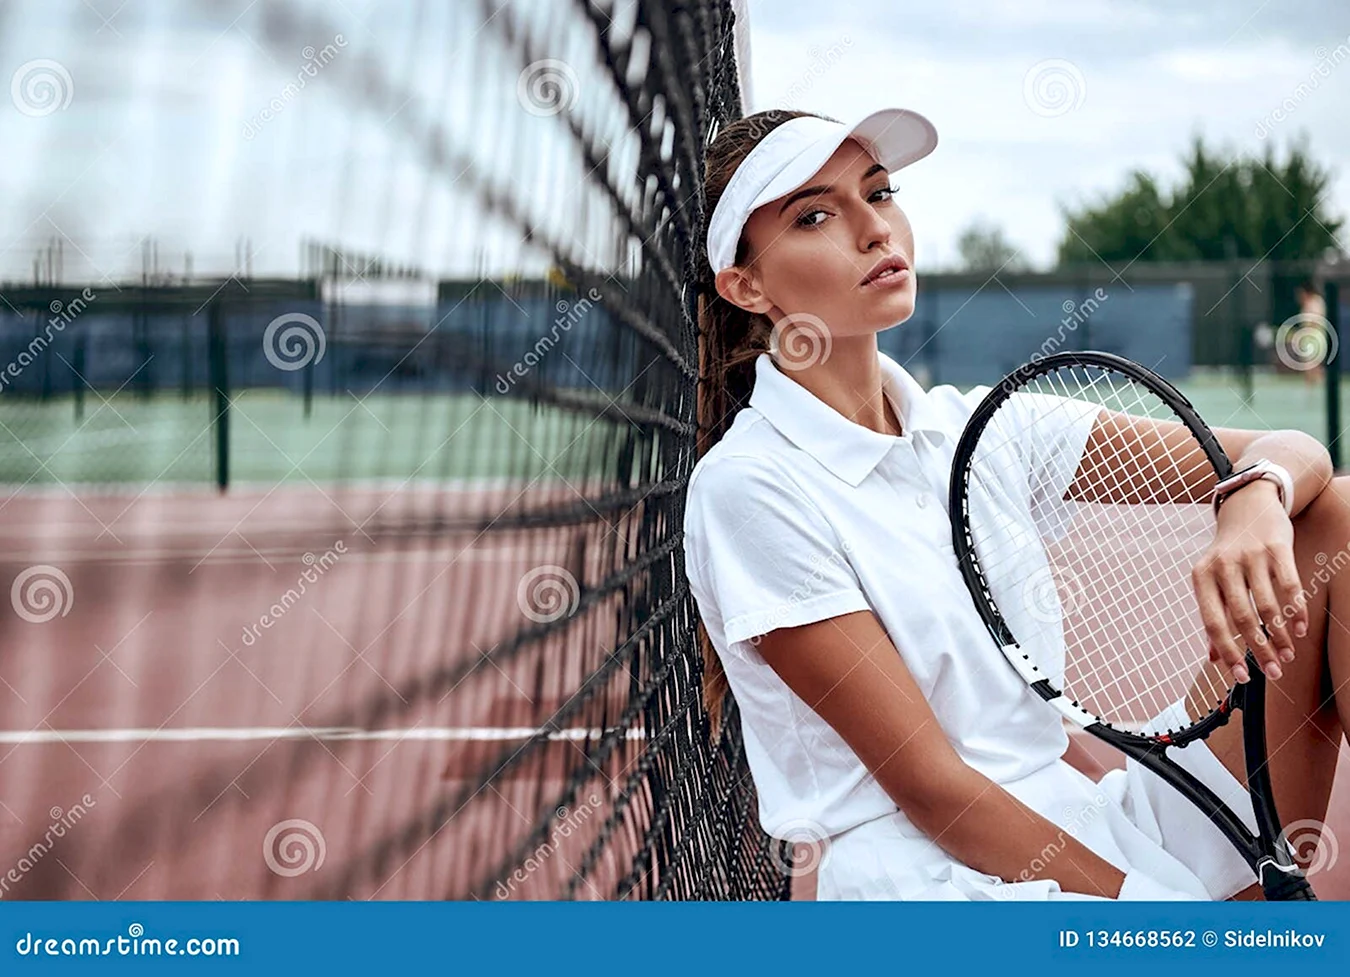 Фотосъемка на теннисном корте